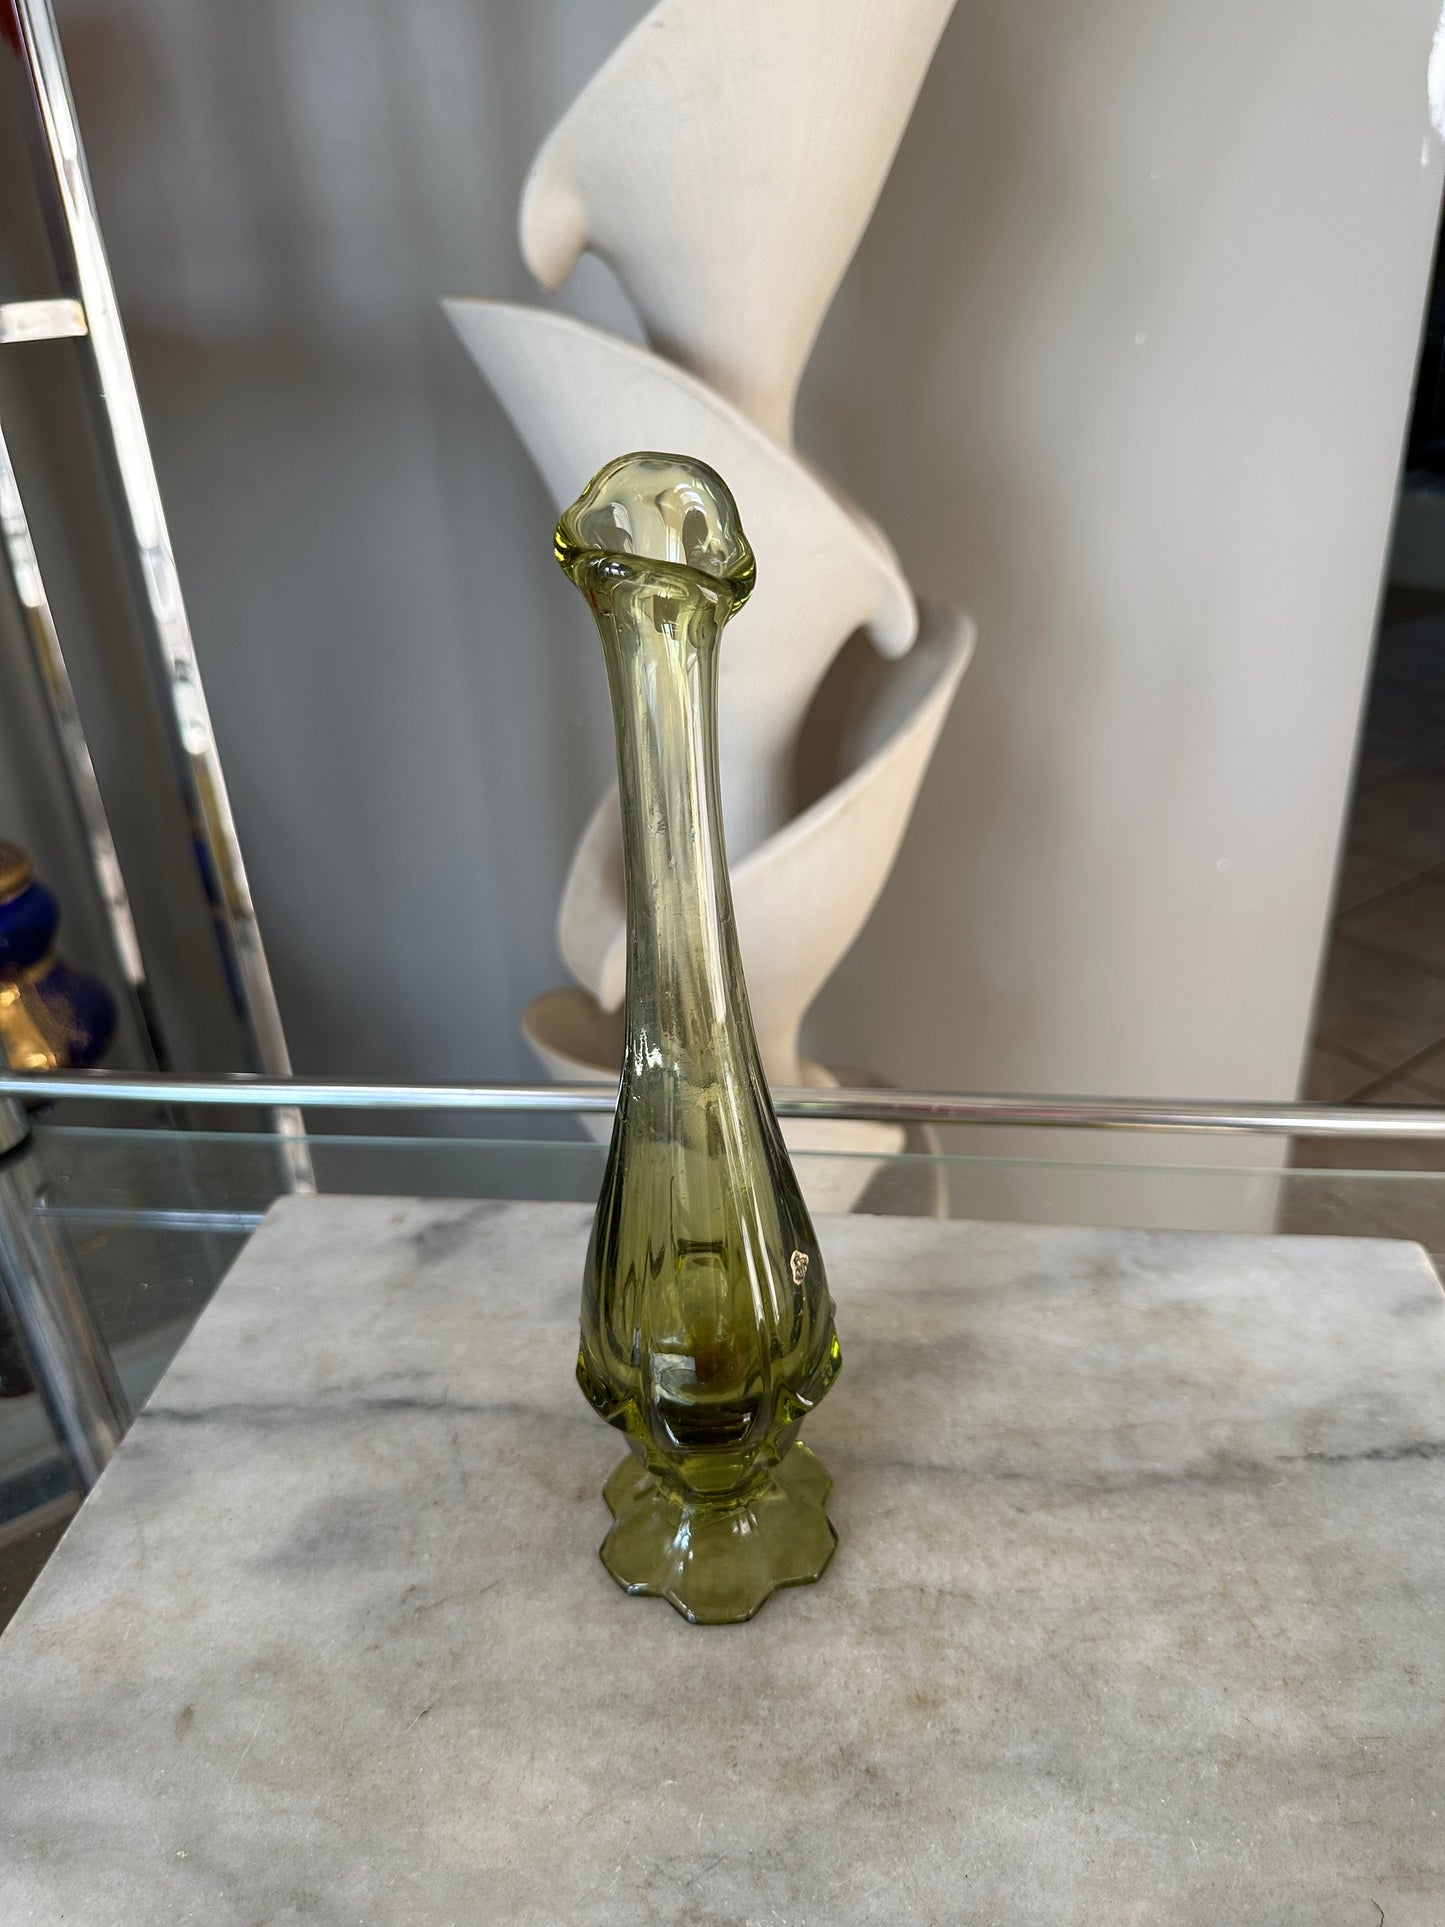 Fenton Valencia 12" Swung Glass Vase in Colonial (Avocado) Green| Fenton Six Petal Vase